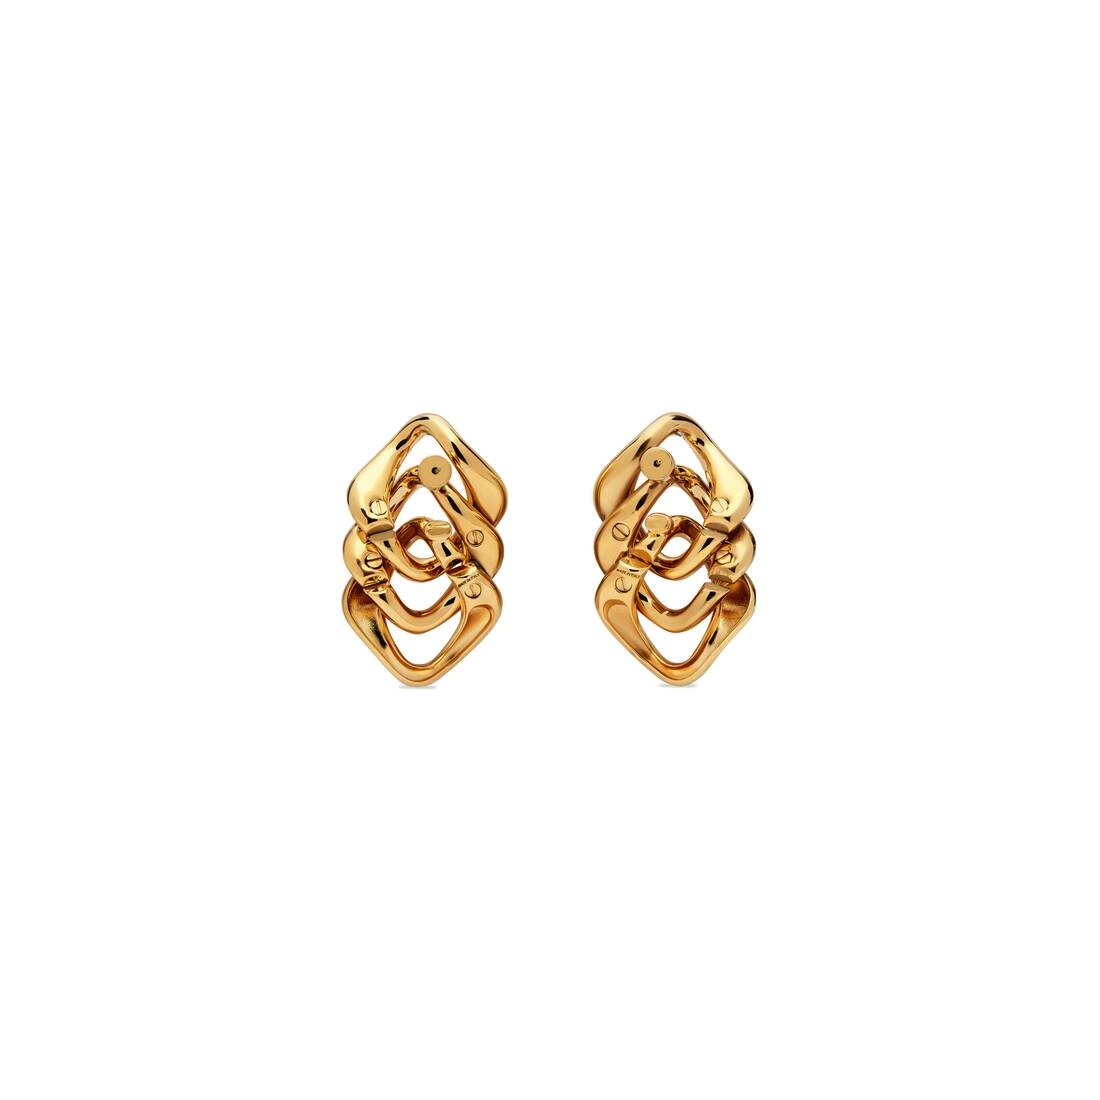 Women's Linked Earrings in Gold - 2